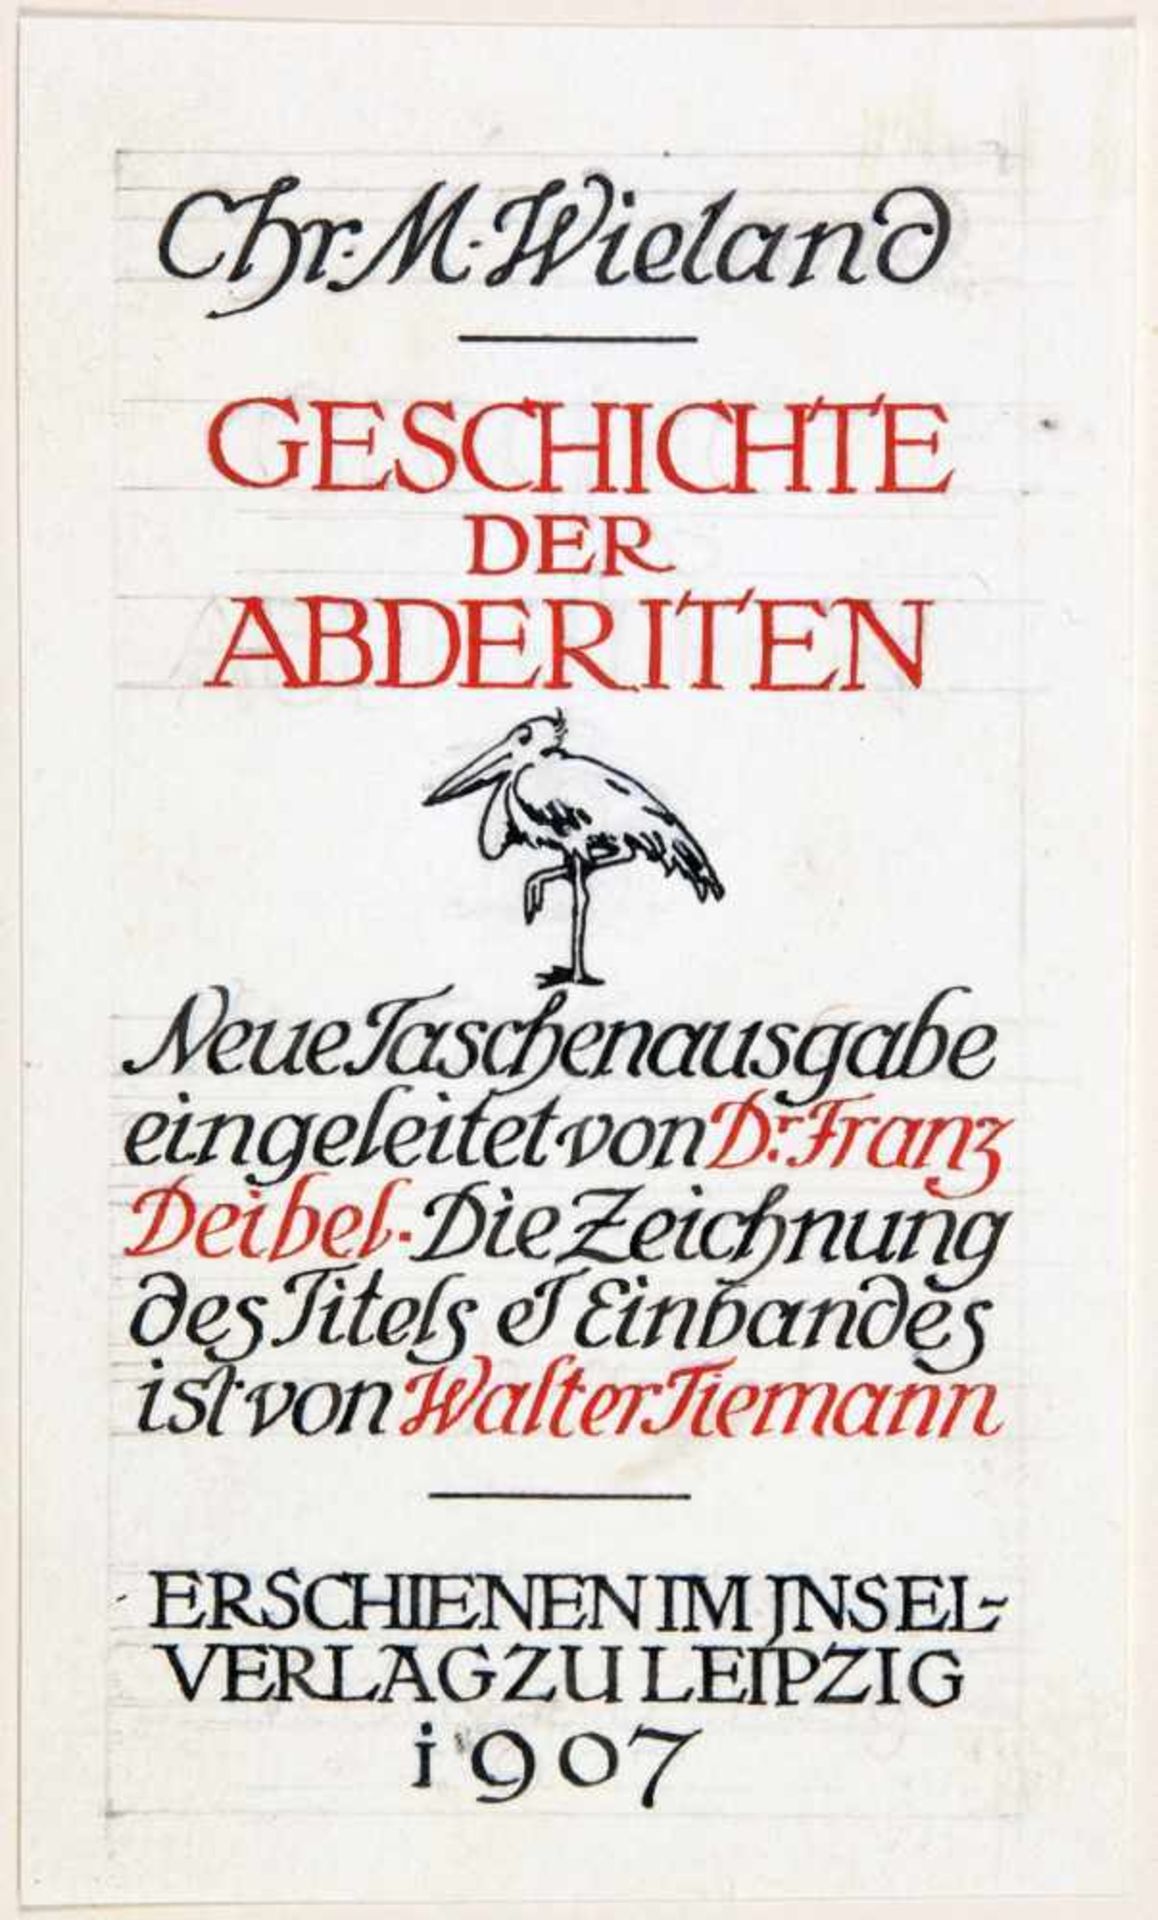 Insel Verlag - Walter Tiemann. Geschichte der Abderiten. Tuschzeichnung und zweifarbige - Image 2 of 3